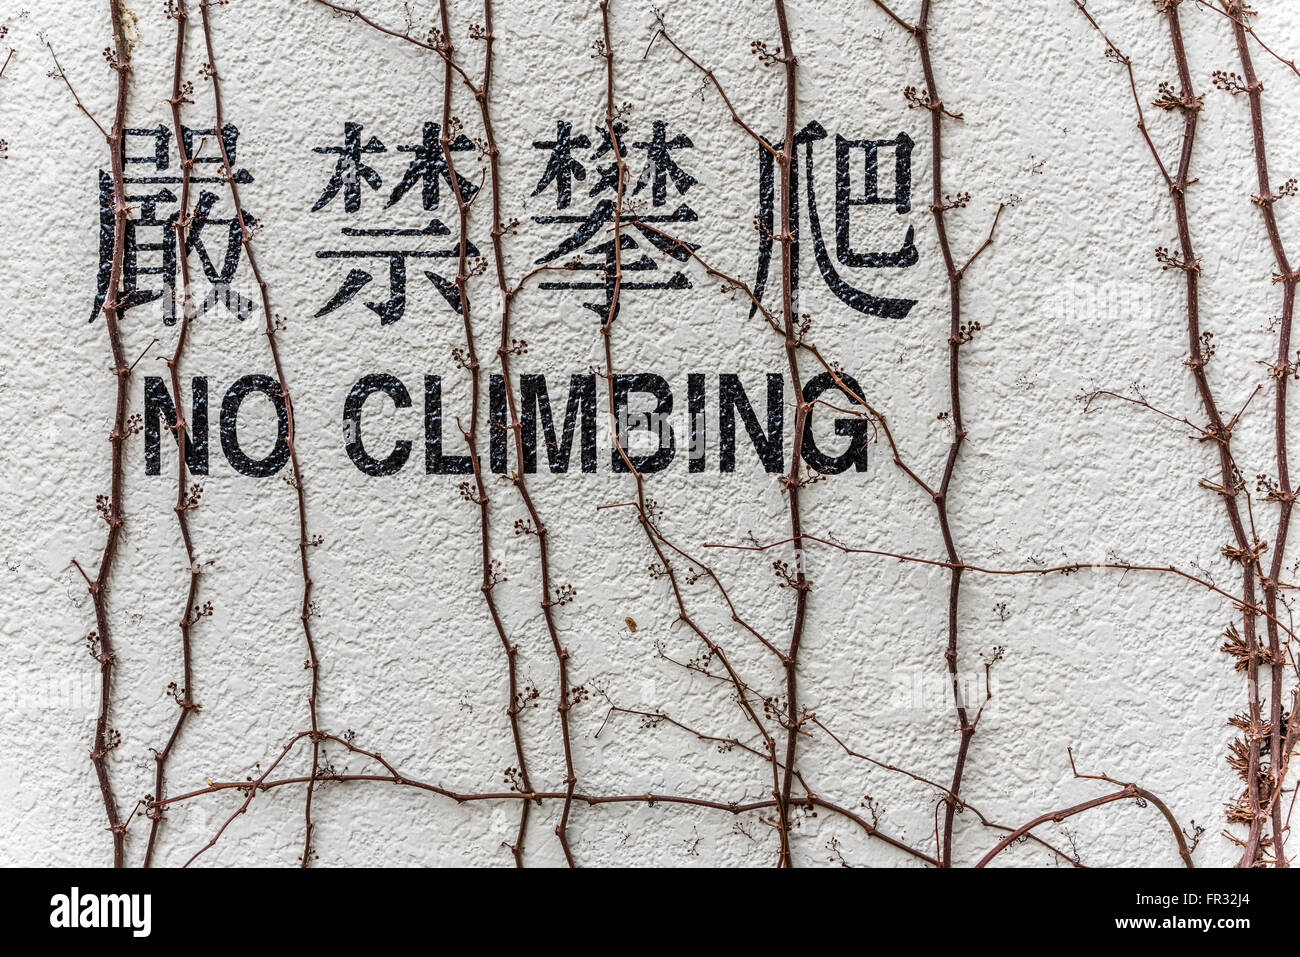 Pas de mot chinois et anglais d'Escalade sur mur Banque D'Images